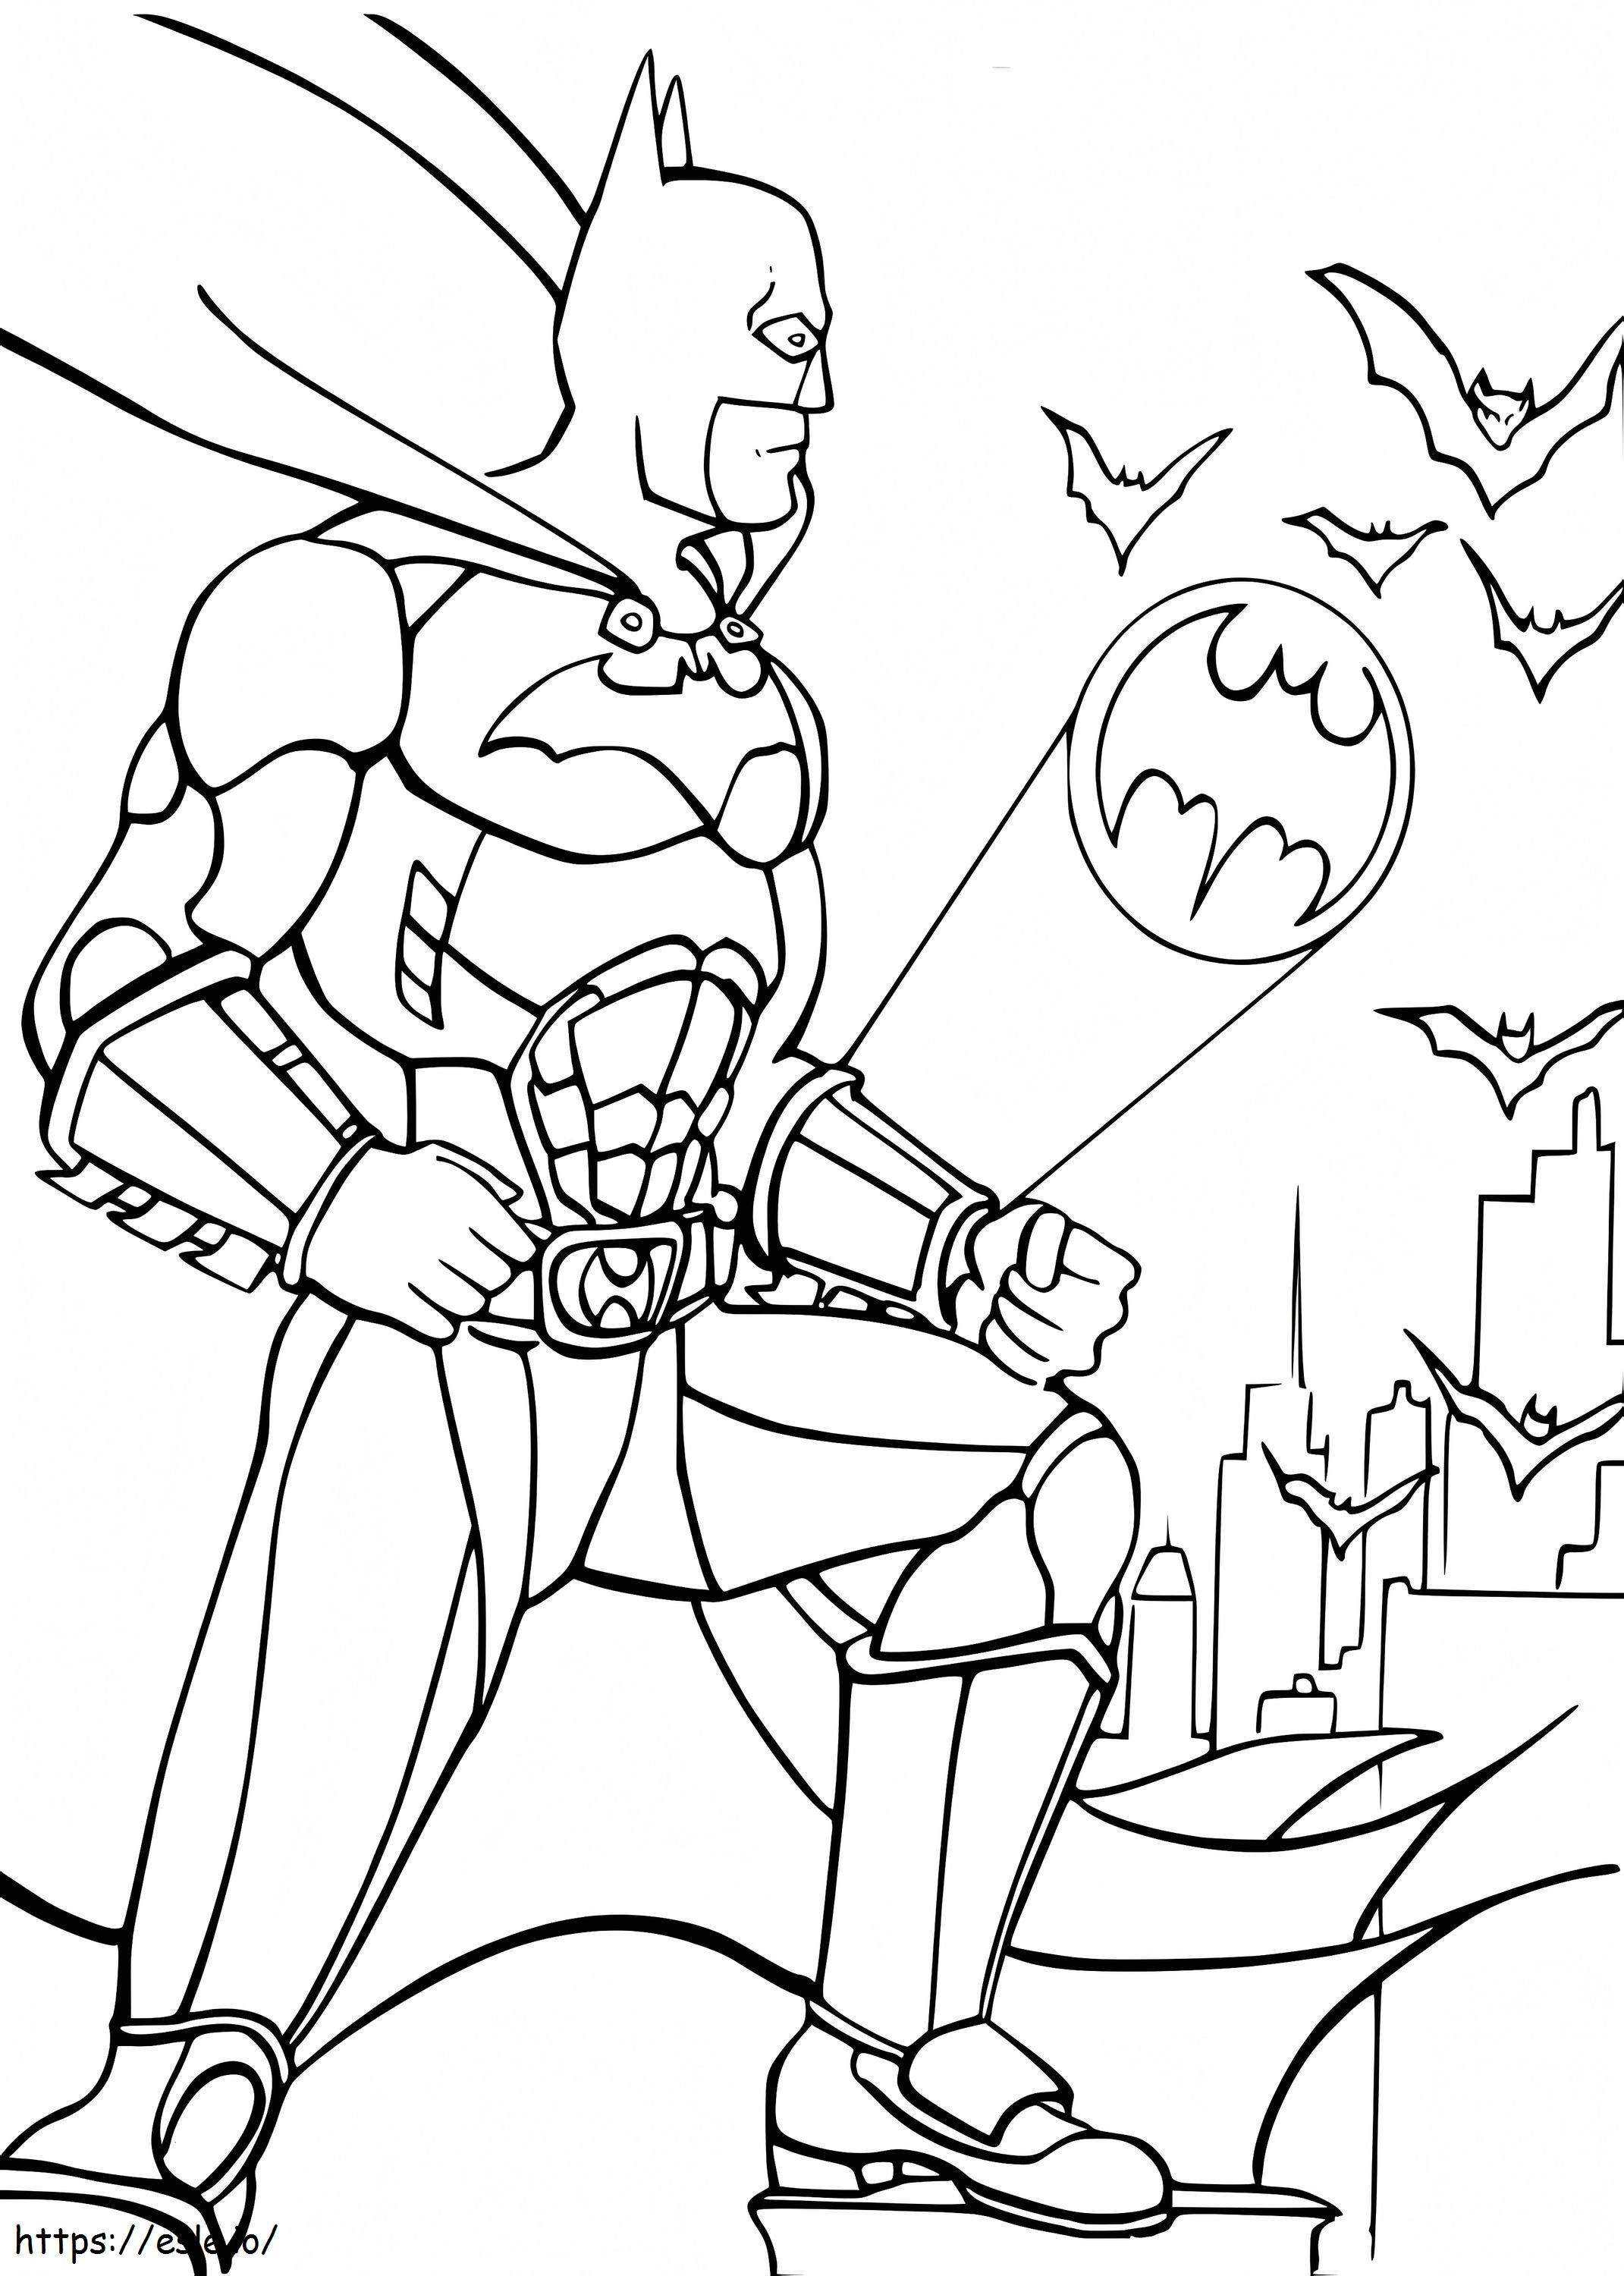 Batman Genial 5 coloring page